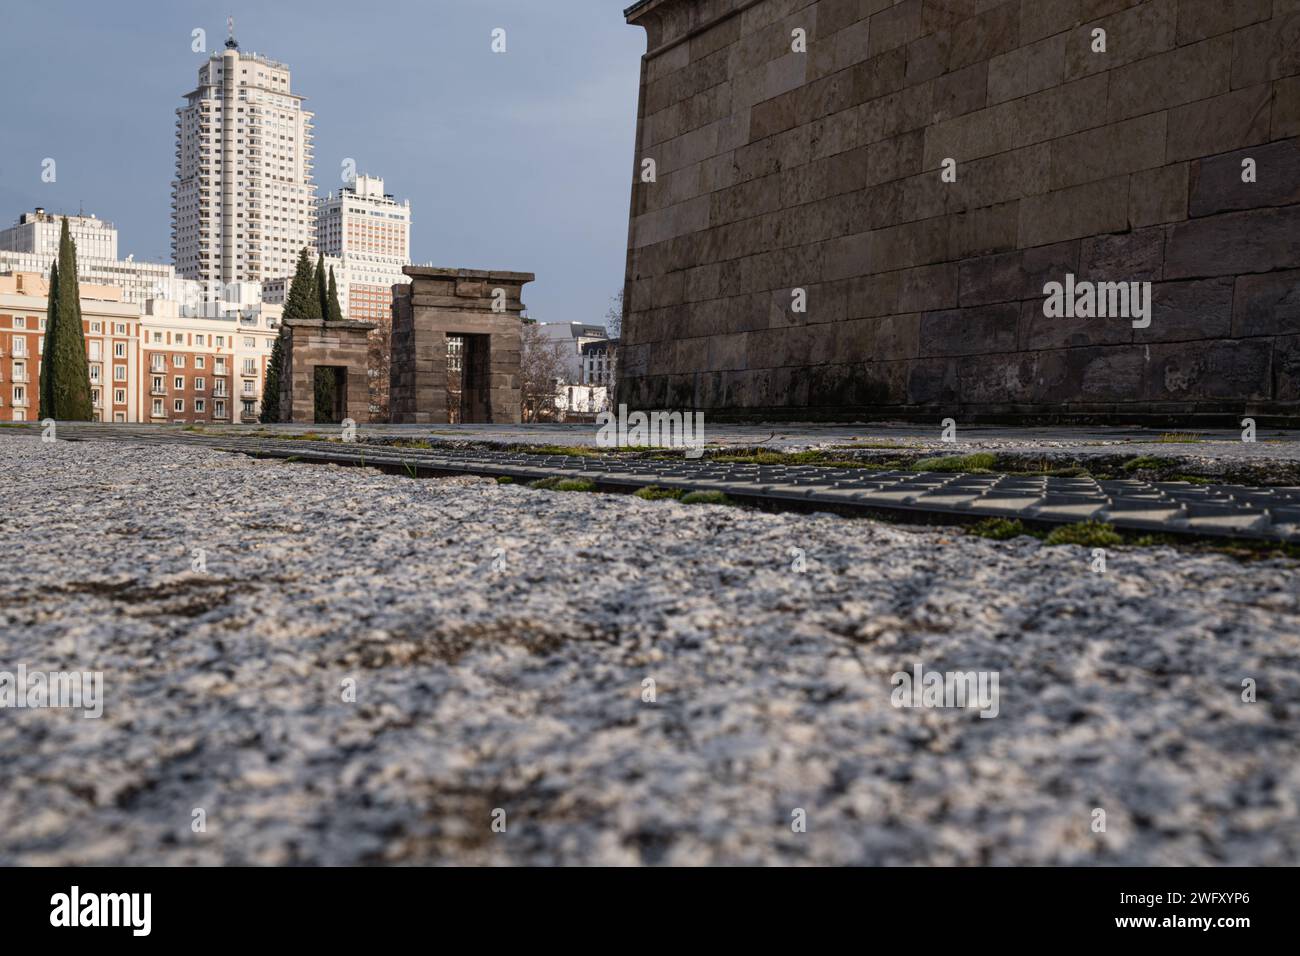 Blick vom Boden auf den Tempel von Debod, ein ägyptischer Tempel in Madrid, Spanien. Der antike Tempel wurde 1968 von Ägypten an Spanien geschenkt. Stockfoto